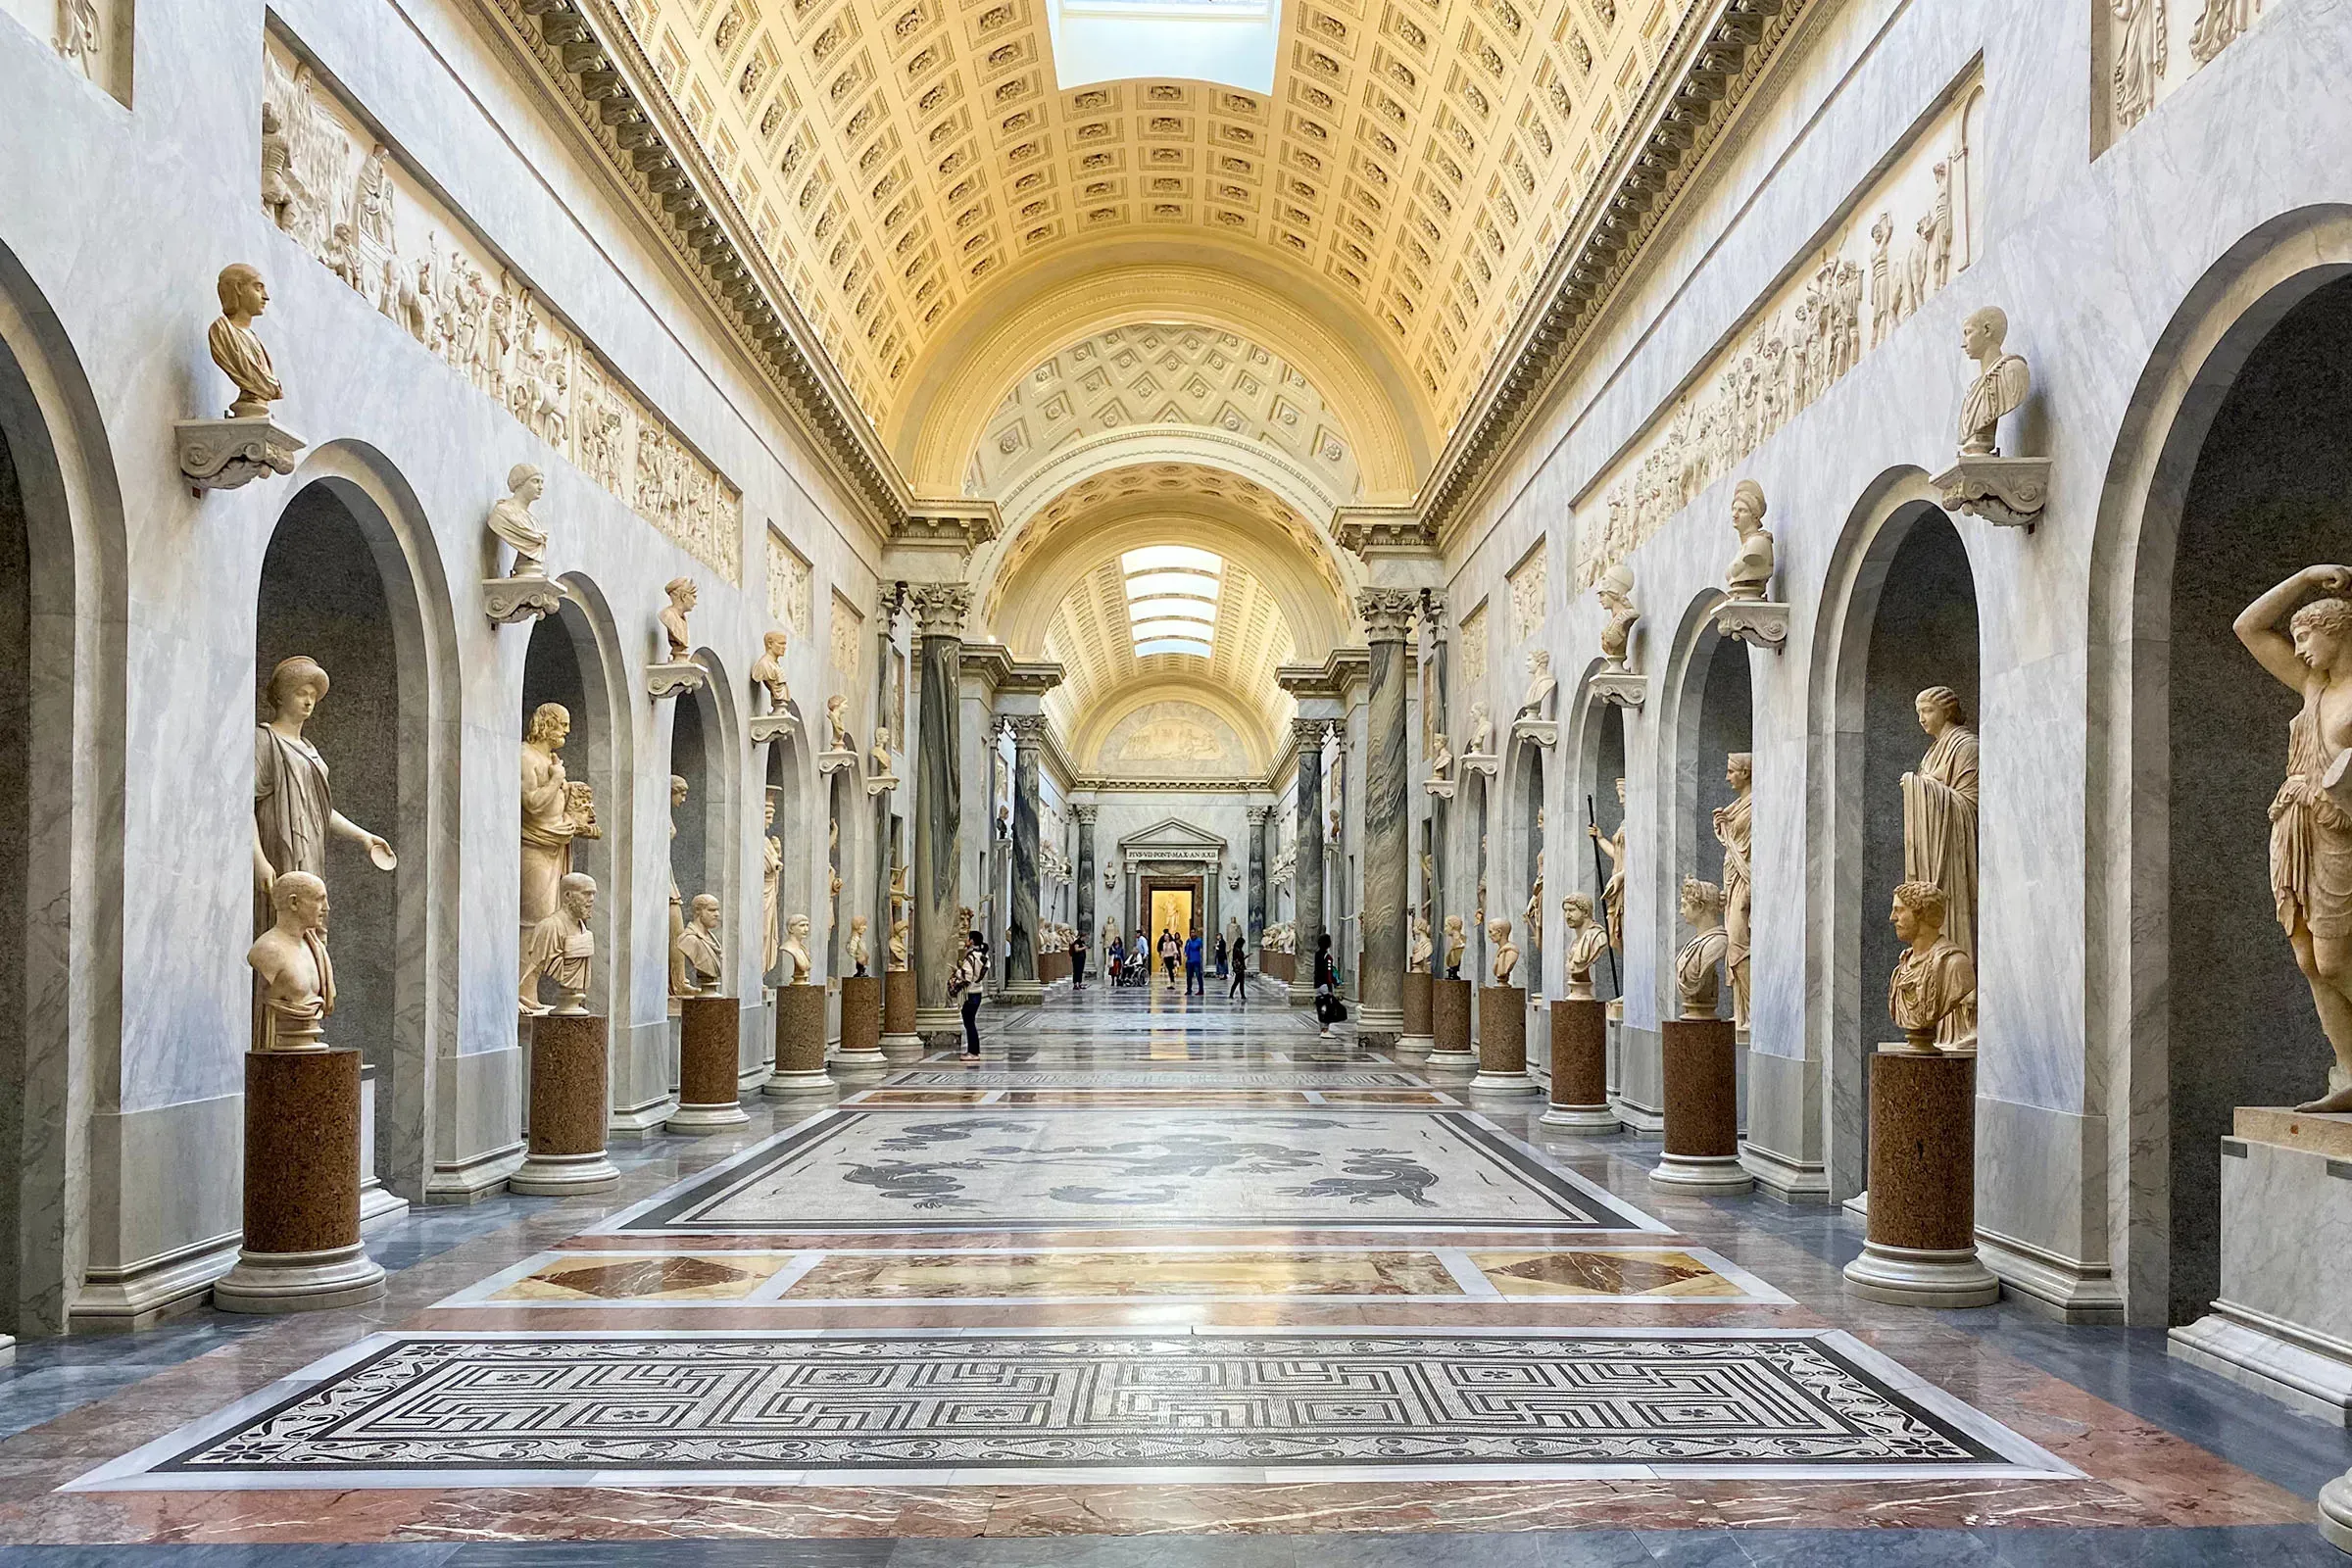 Maravilhas Artísticas do Vaticano & Capela Sistina